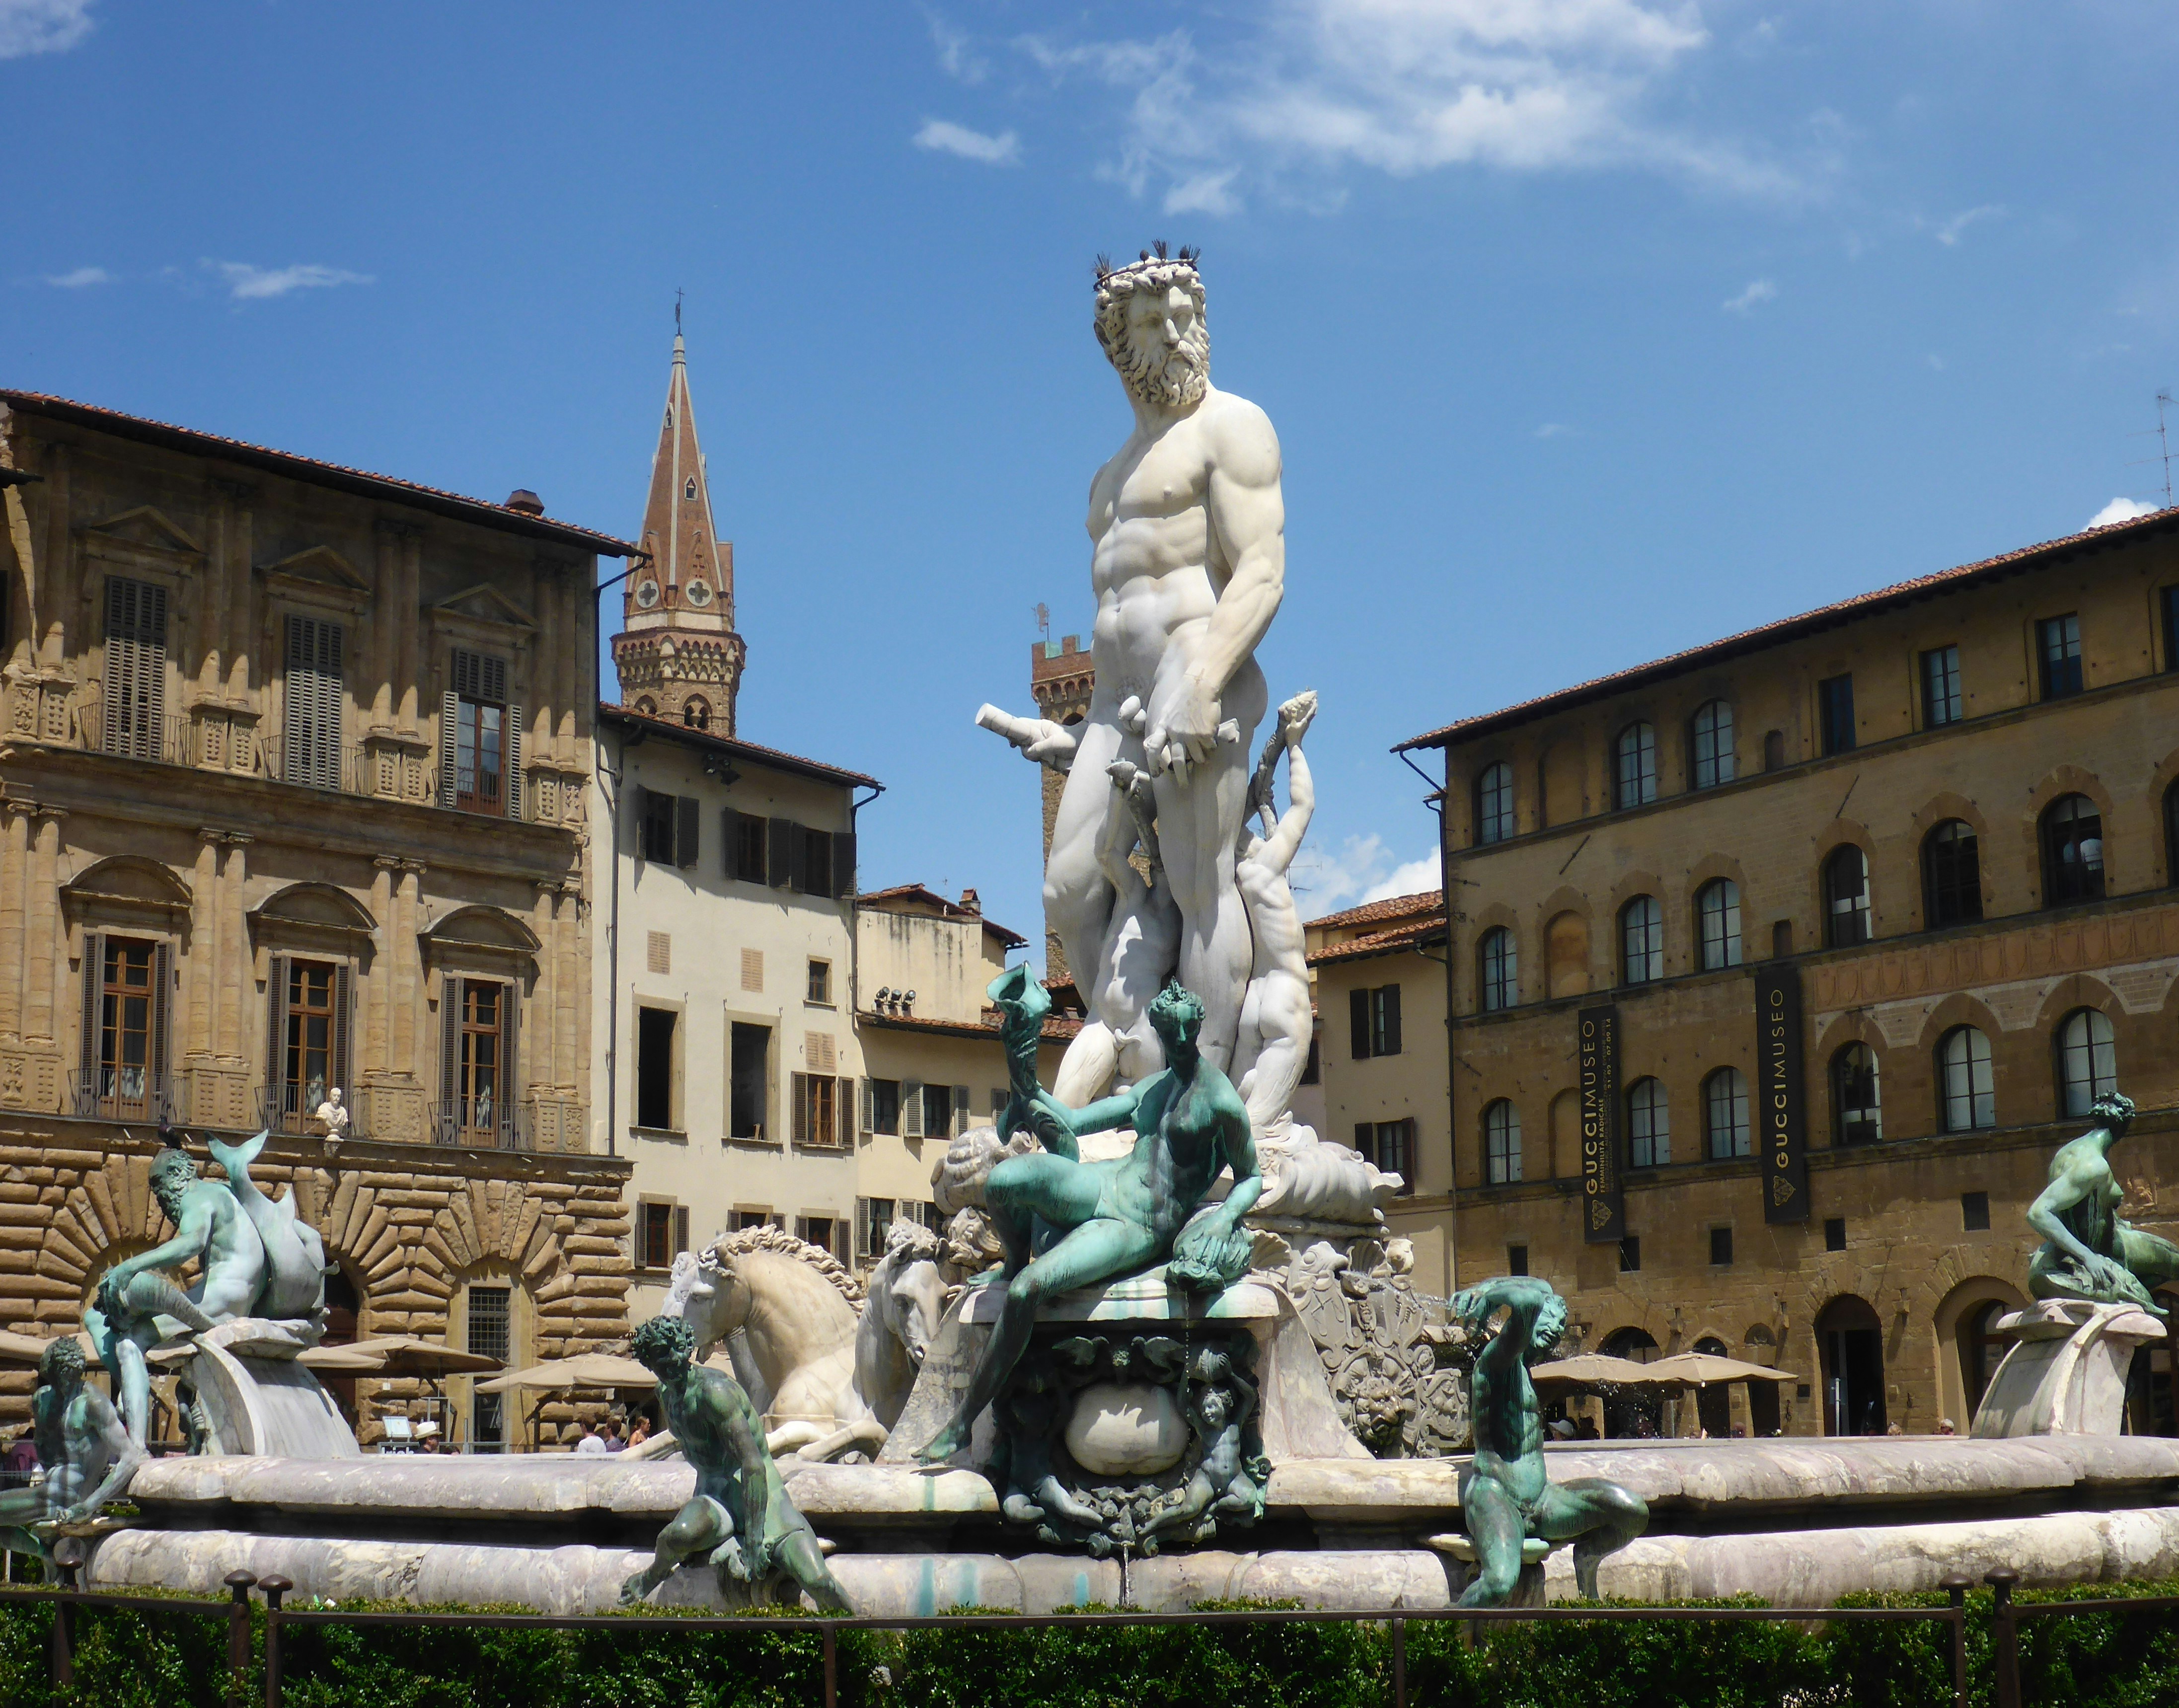 The fountain of Neptune in the Piazza della Signoria